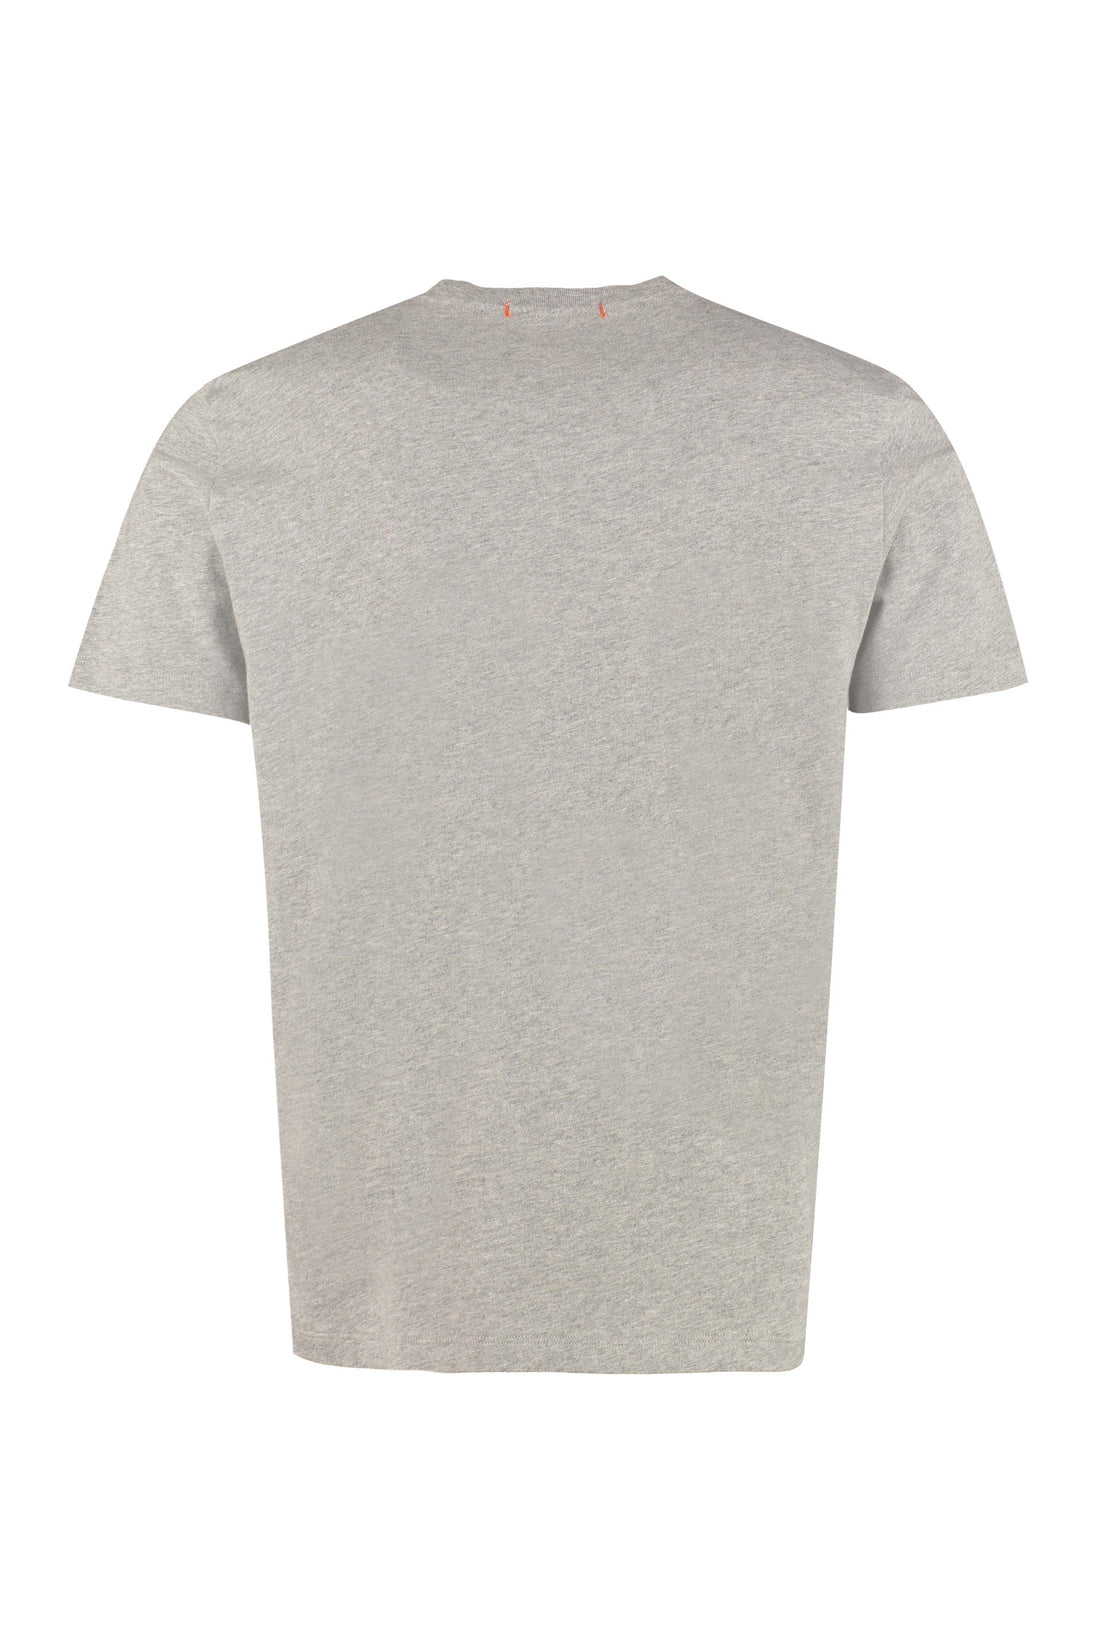 Parajumpers-OUTLET-SALE-Logo print cotton t-shirt-ARCHIVIST